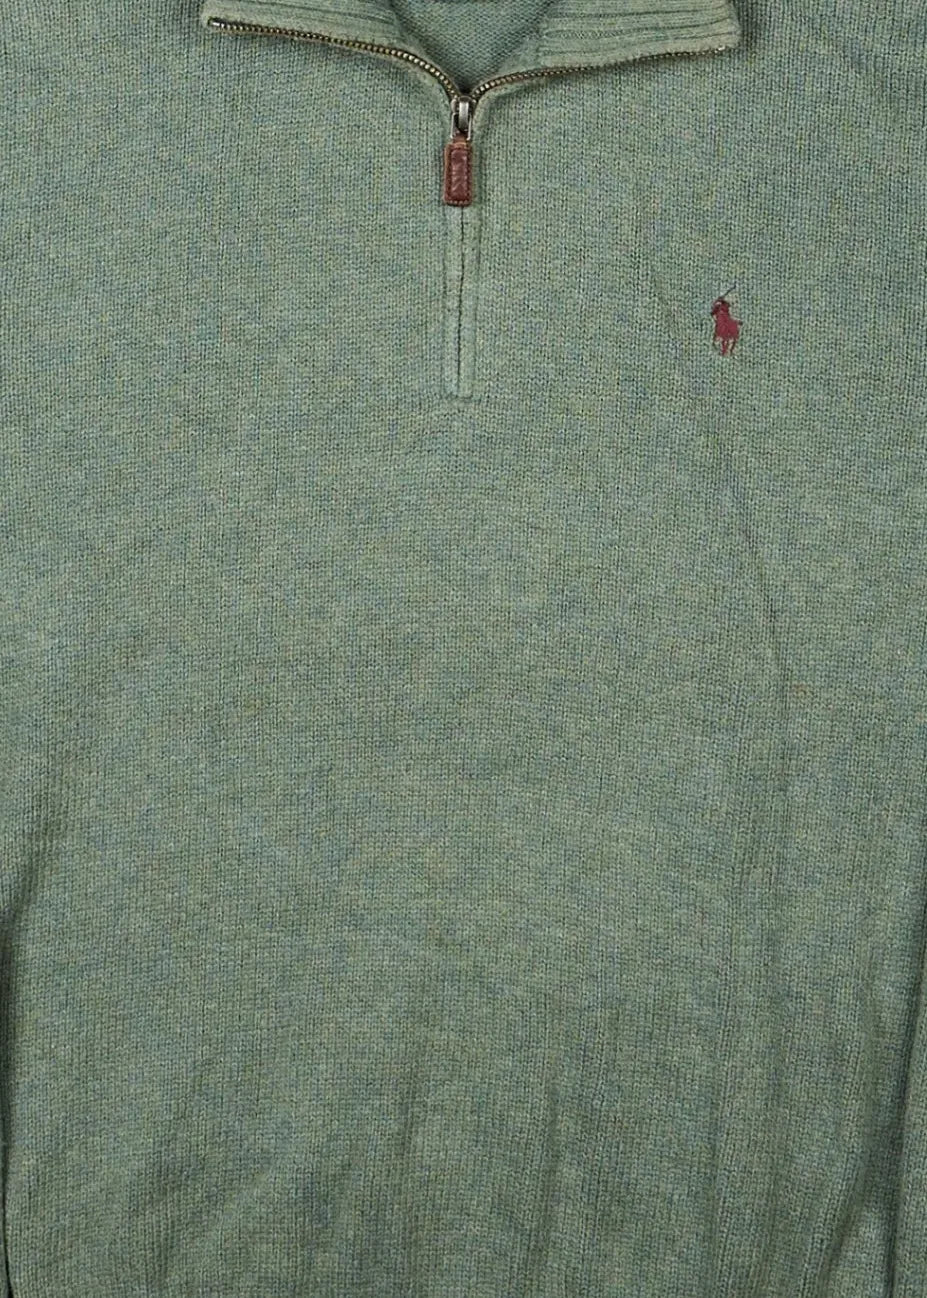 Ralph Lauren - Sweater (M) Center